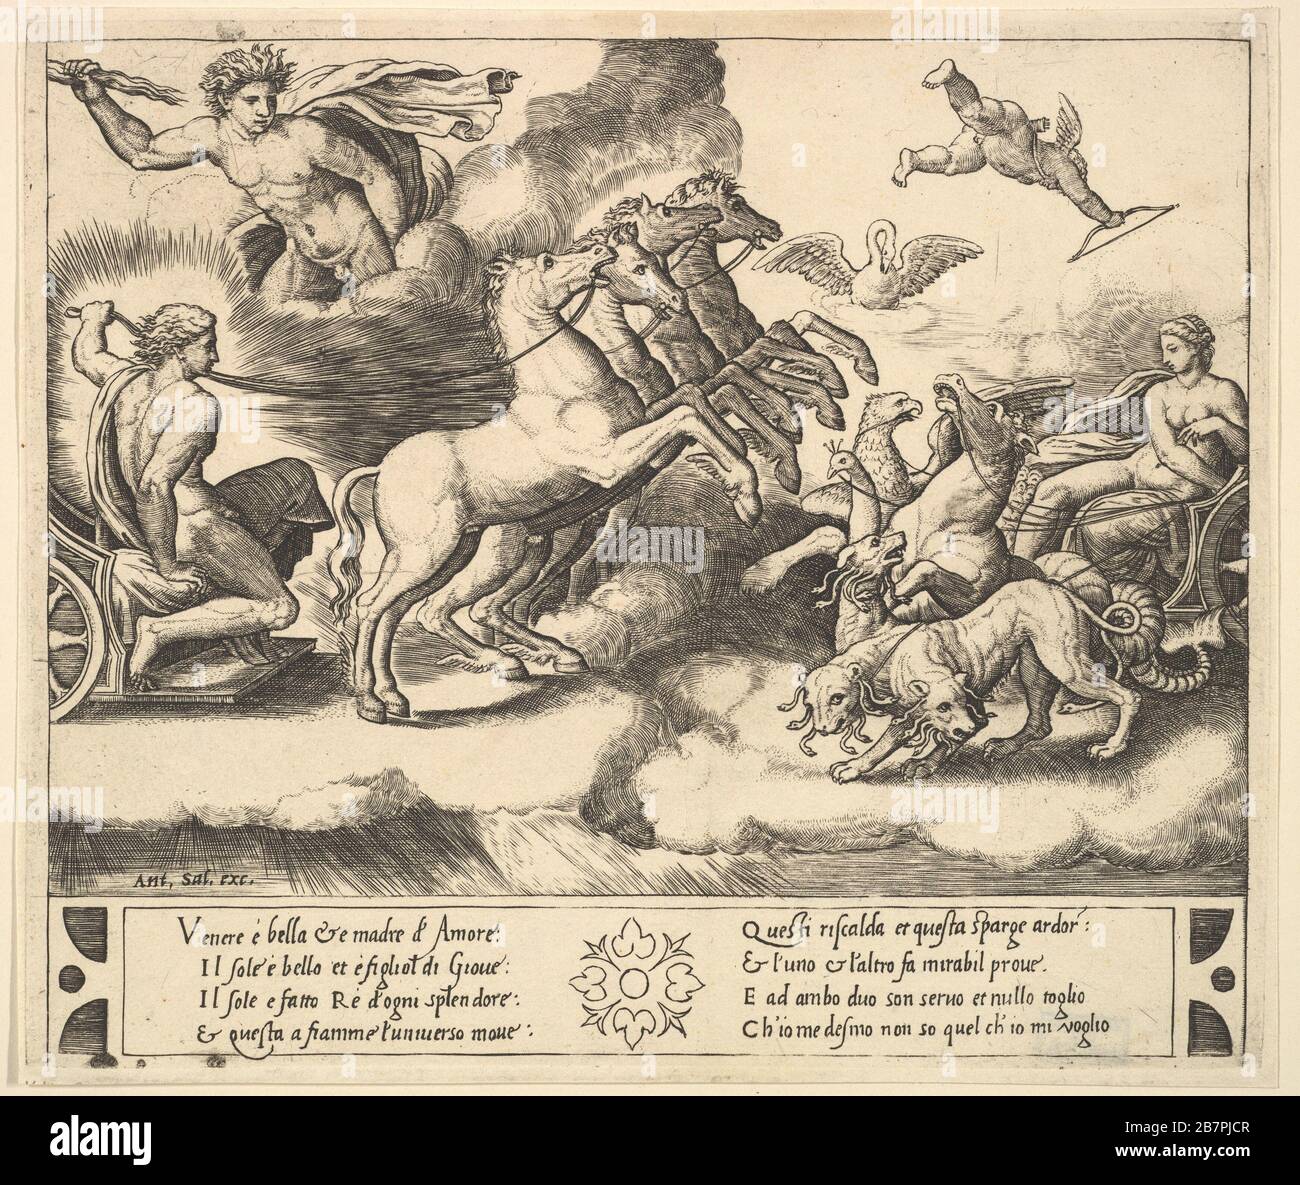 Apollo nel suo carro trainato da cavalli a sinistra, sopra di lui Giove lancia una thunderbolt, Venere a destra nel suo carro trainato da animali, 1530-60. Foto Stock